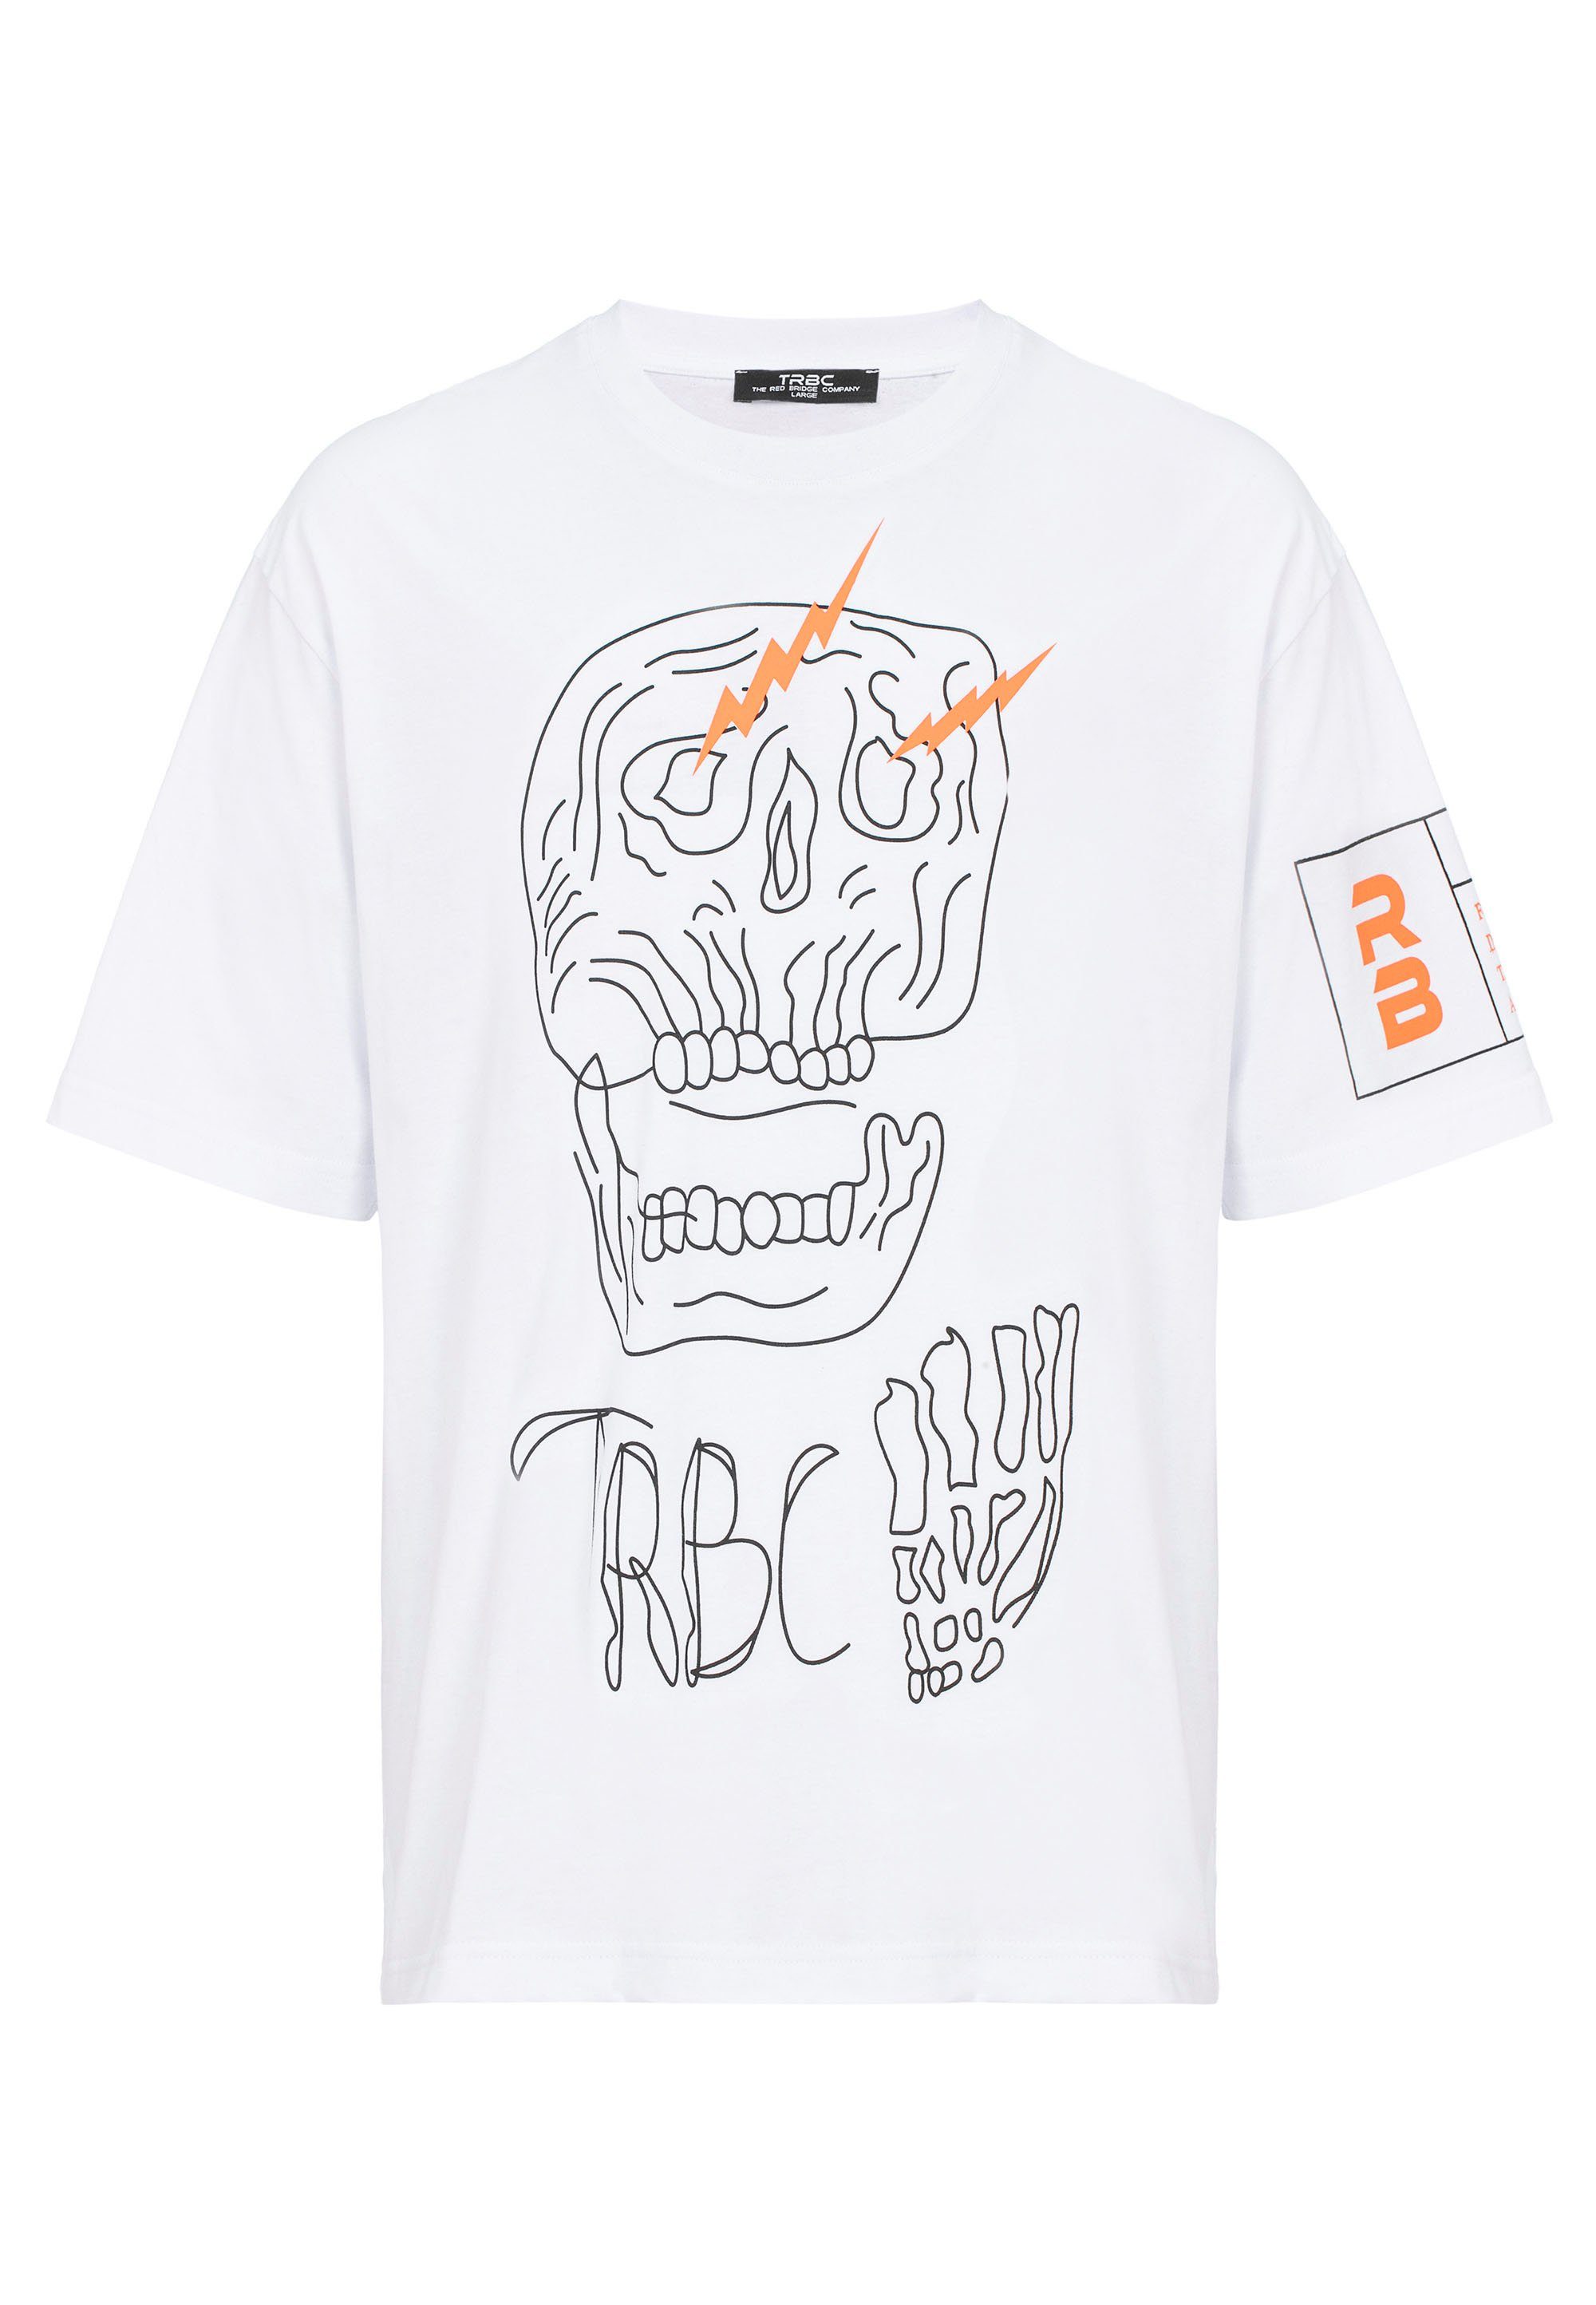 RedBridge T-Shirt mit McAllen weiß stylischem Totenkopf-Print